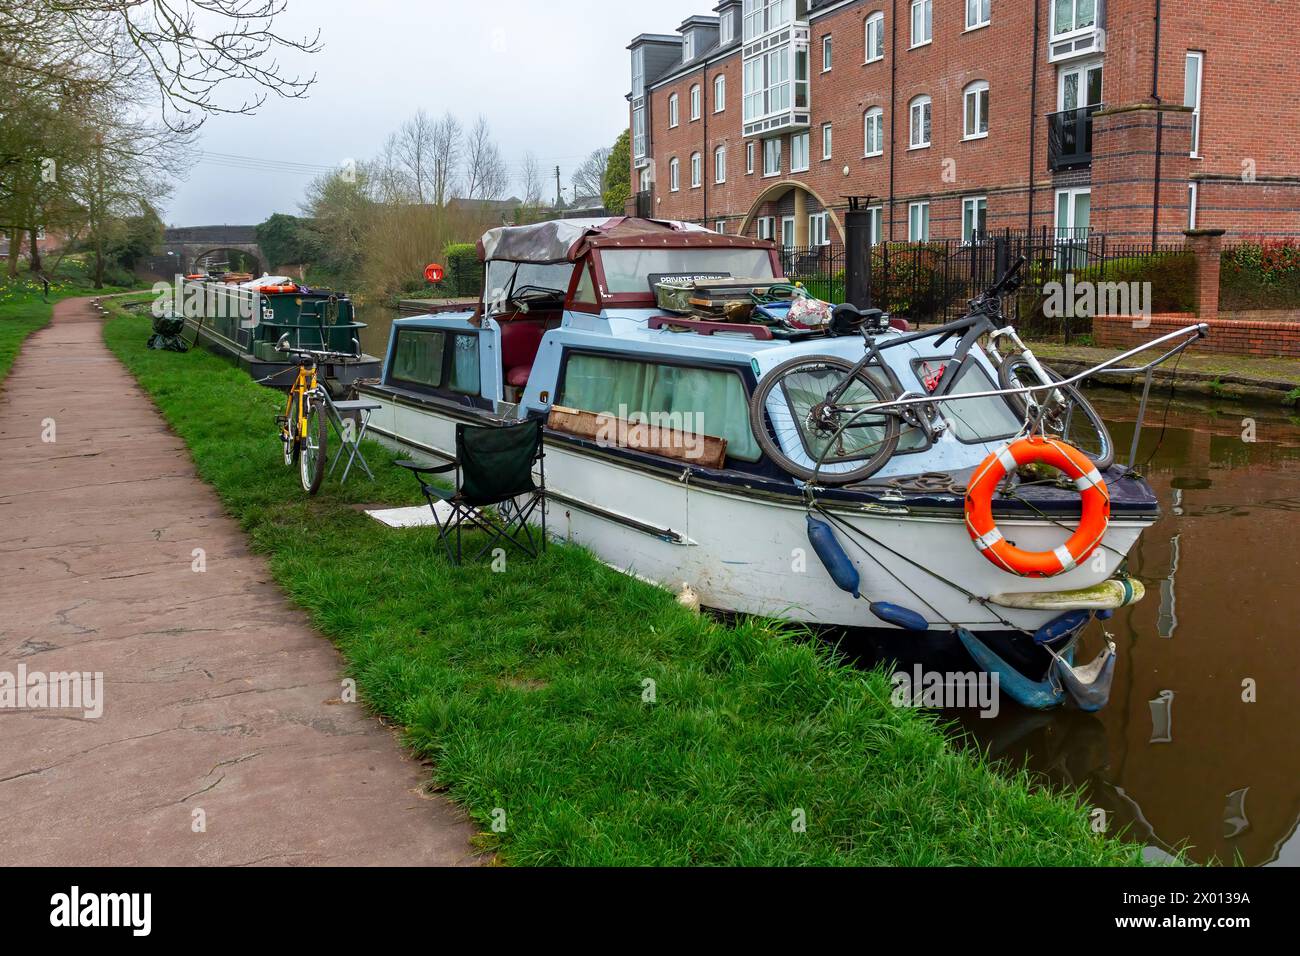 Ein Kanalboot liegt am Schleppweg. Fahrräder stehen draußen. Einer liegt auf dem Gras, der andere auf der Vorderseite des Bootes. Stockfoto